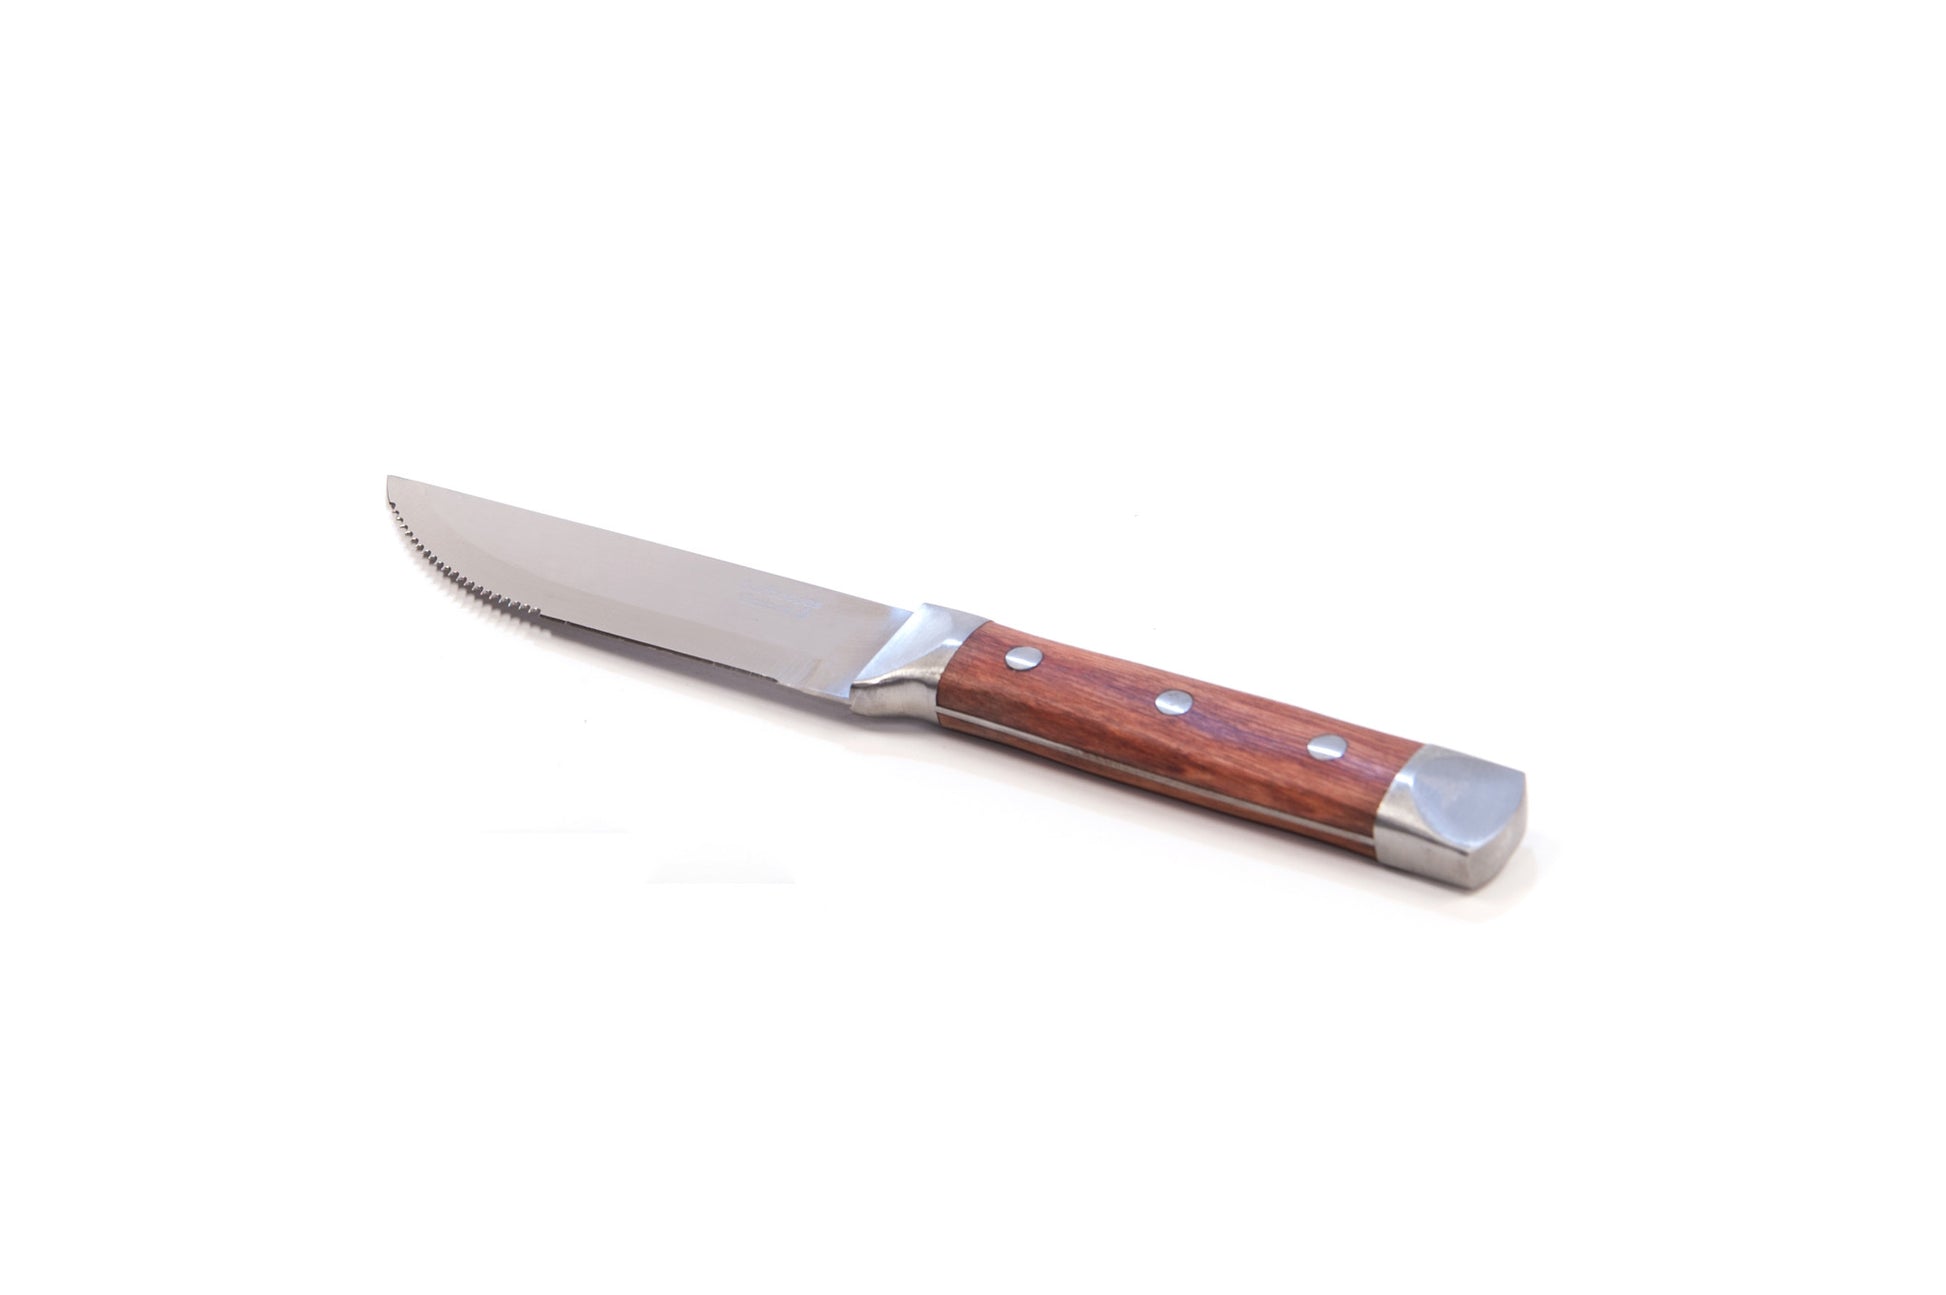 Brander Steak Knife with Rosewood Handle - Alternate View 1